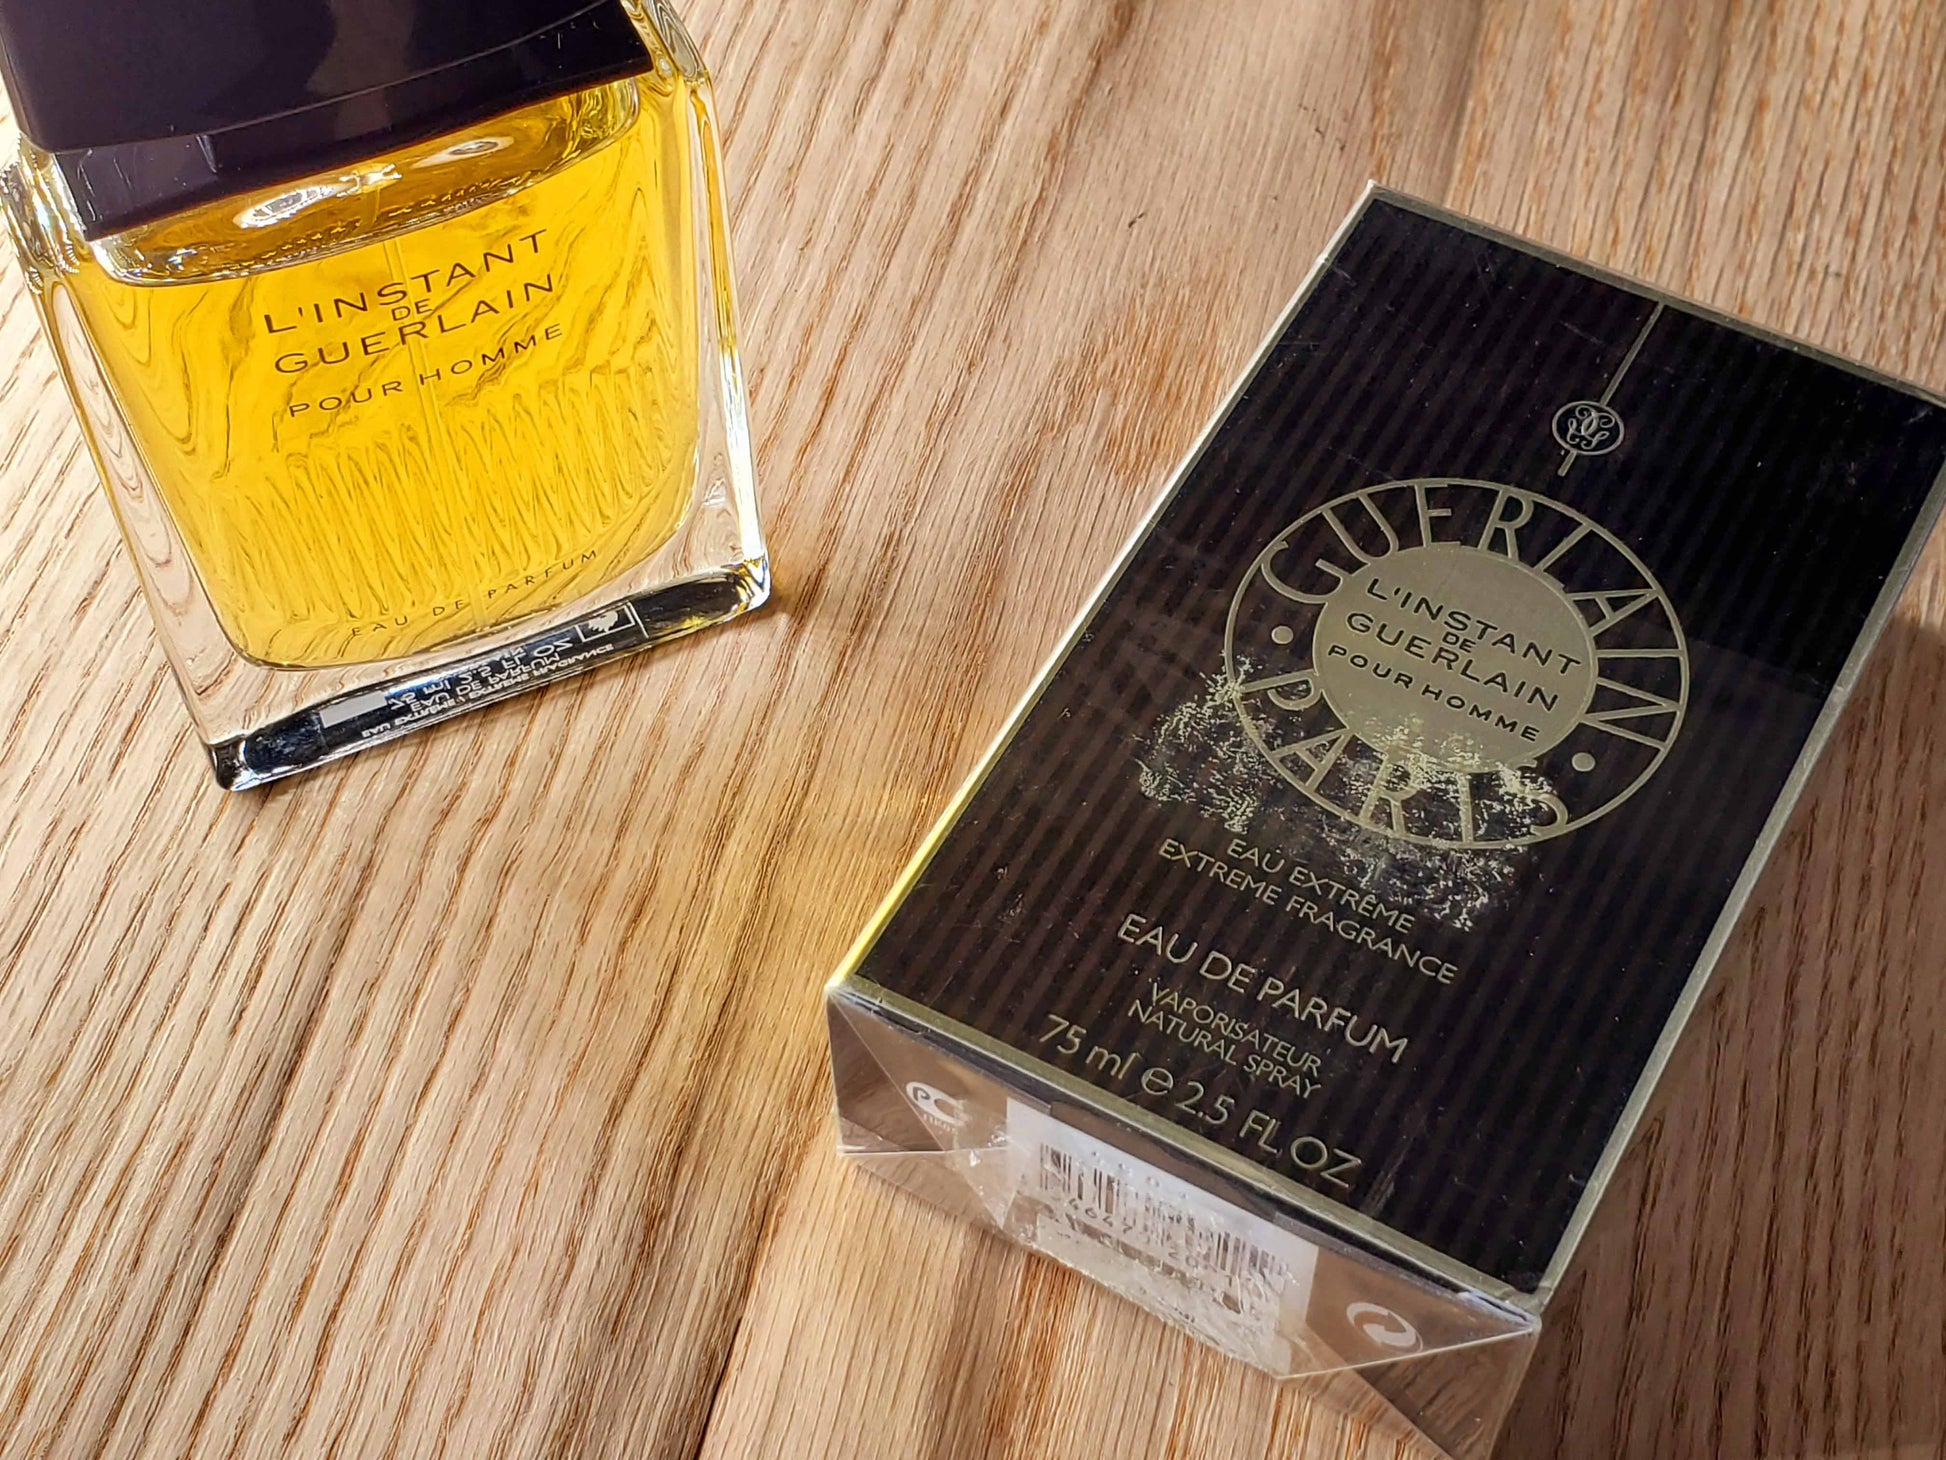 L'Instant de Guerlain Pour Homme Eau Extreme Vintage Tester - Perfumani